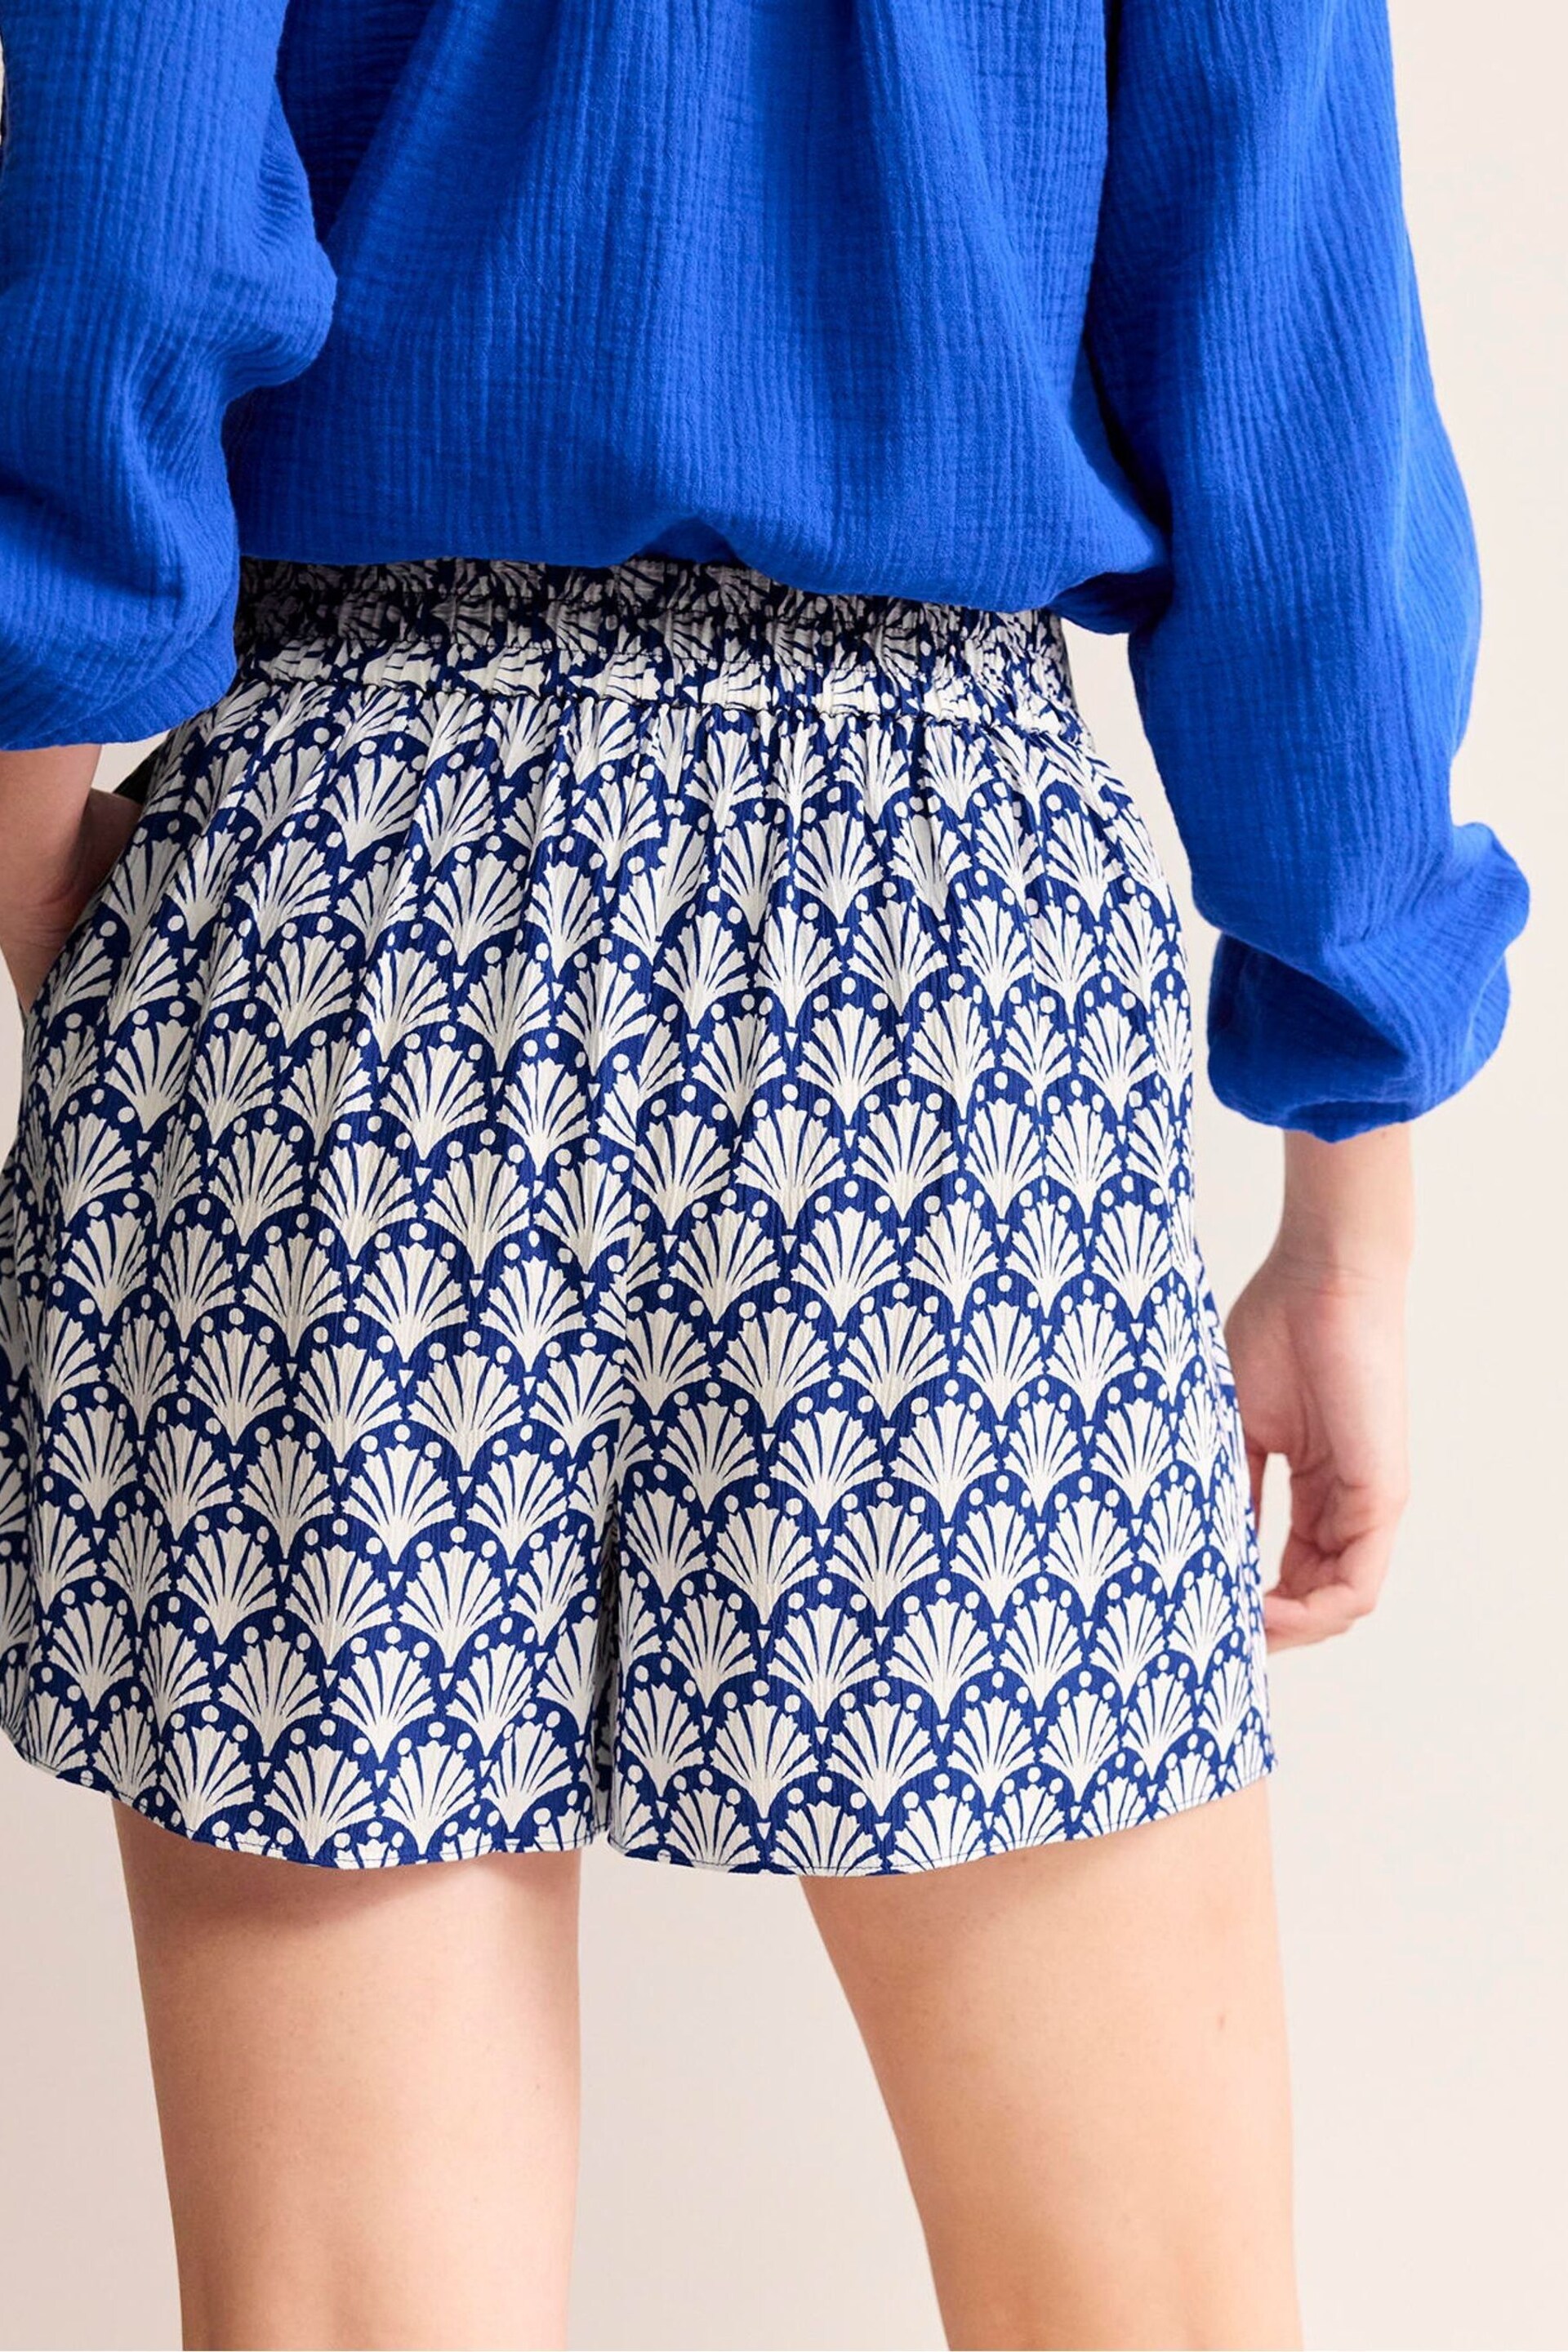 Boden Blue Crinkle Shorts - Image 3 of 5